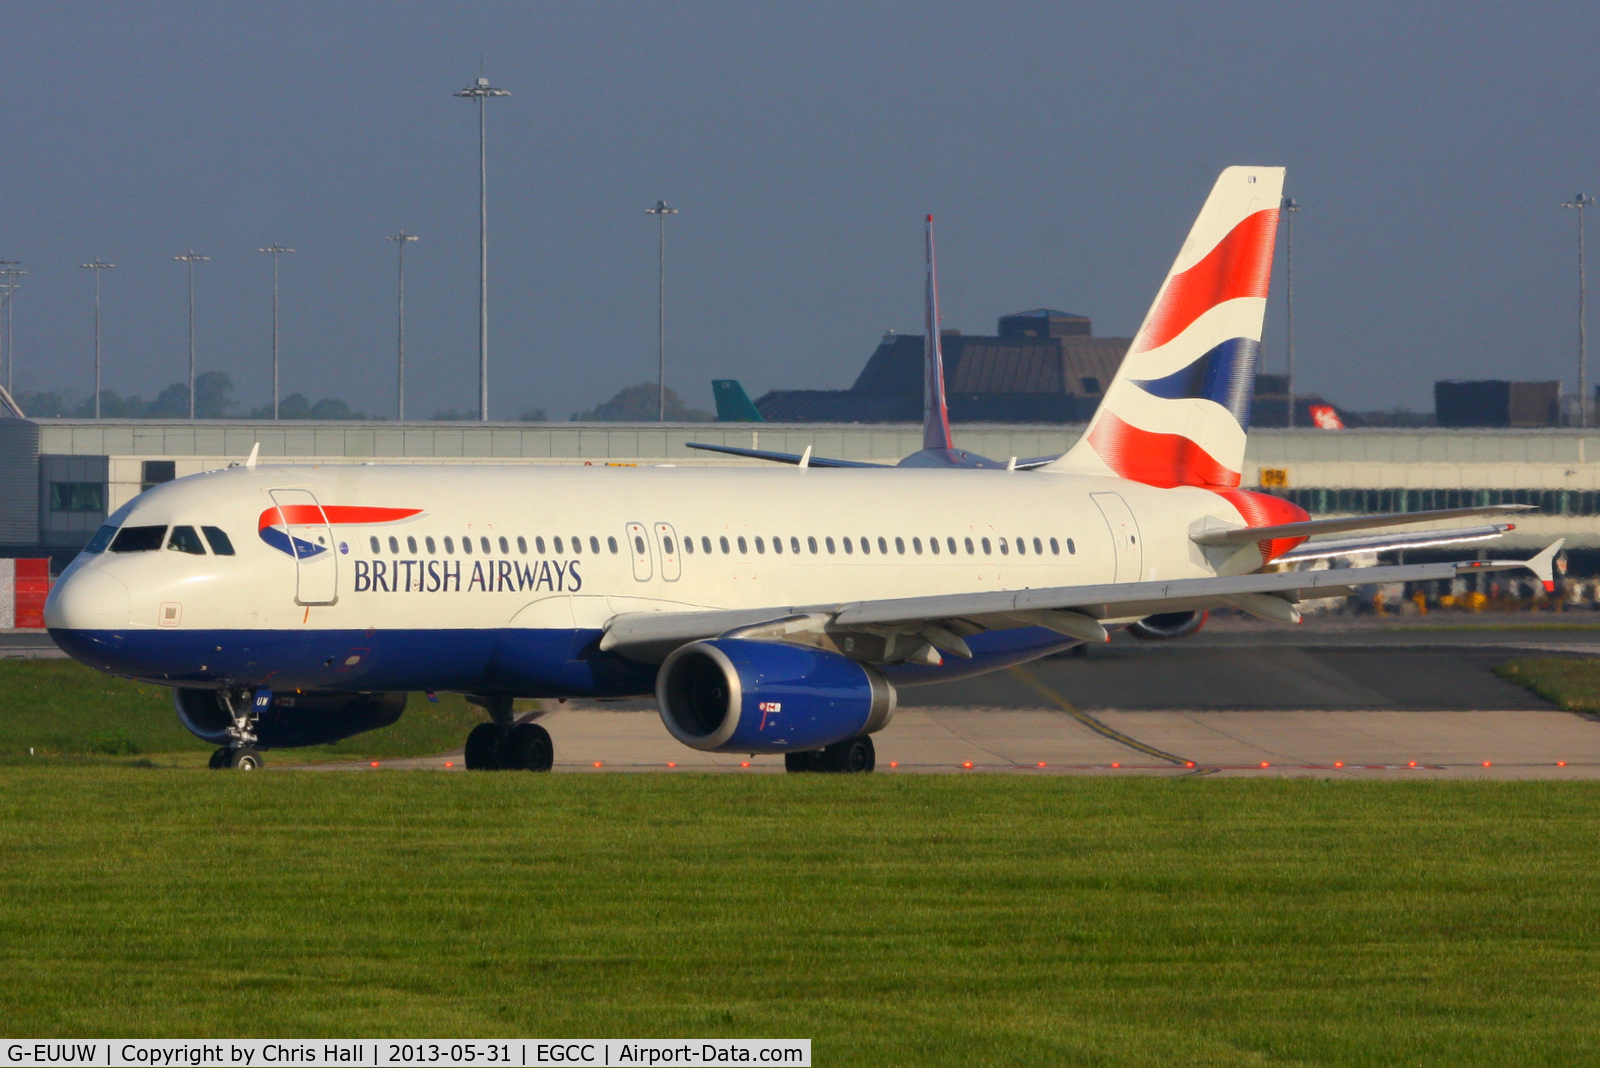 G-EUUW, 2008 Airbus A320-232 C/N 3499, British Airways